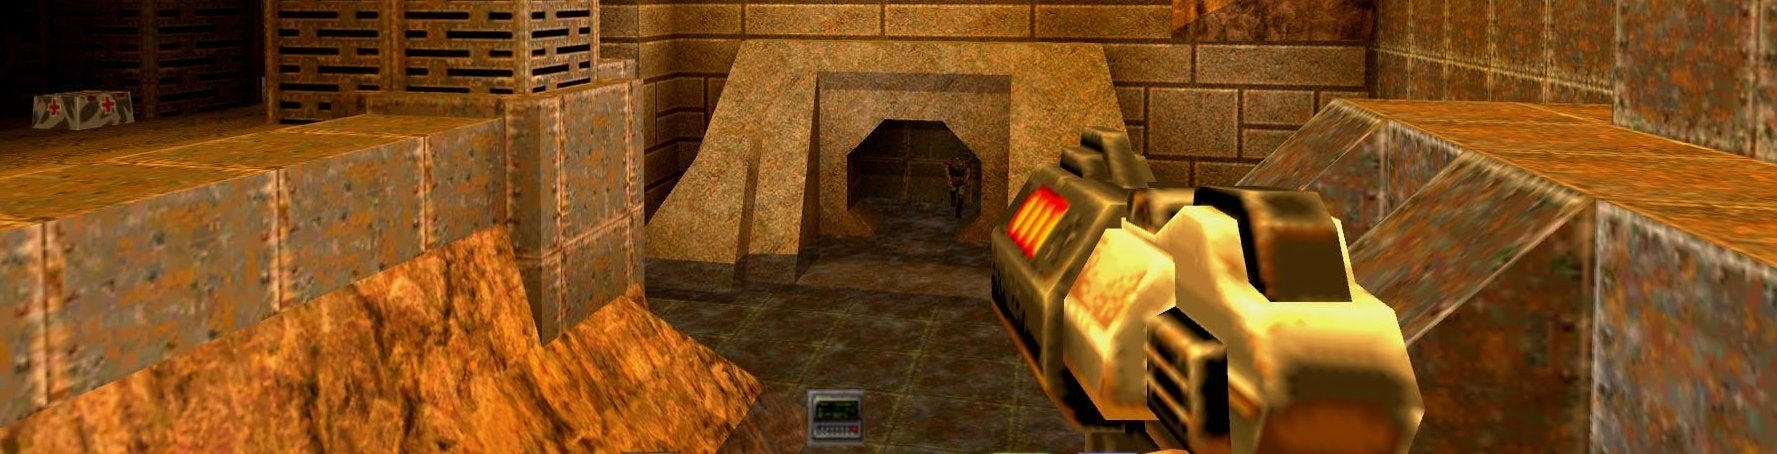 Obrazki dla Quake 2 na Xboksa 360 - pierwszy konsolowy remaster w HD